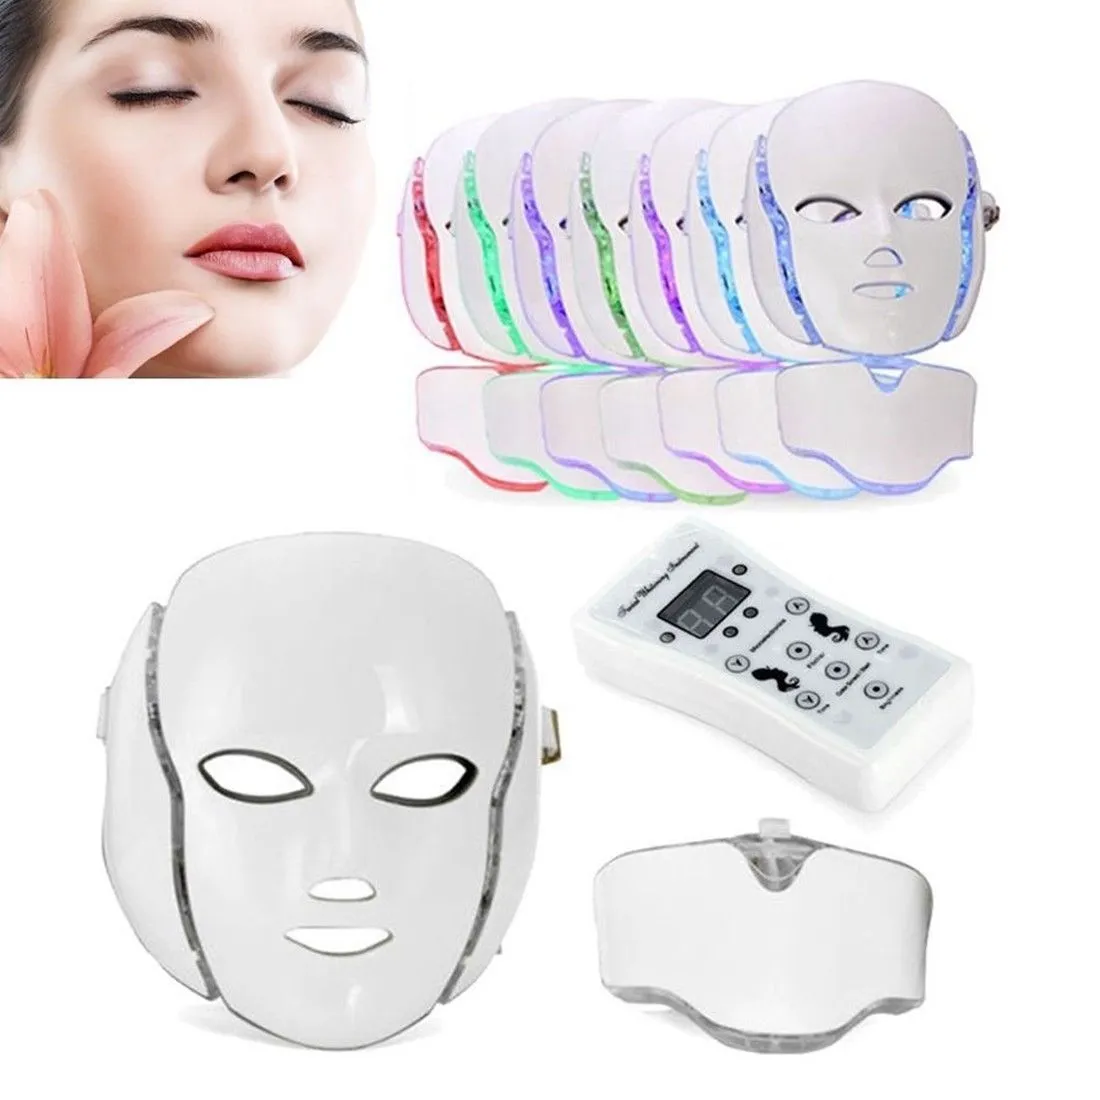 PDT 7 LED Light Therapy Twarz Maszyna kosmetyczna LED Maska na szyję z mikrokurrentem do wybielania skóry